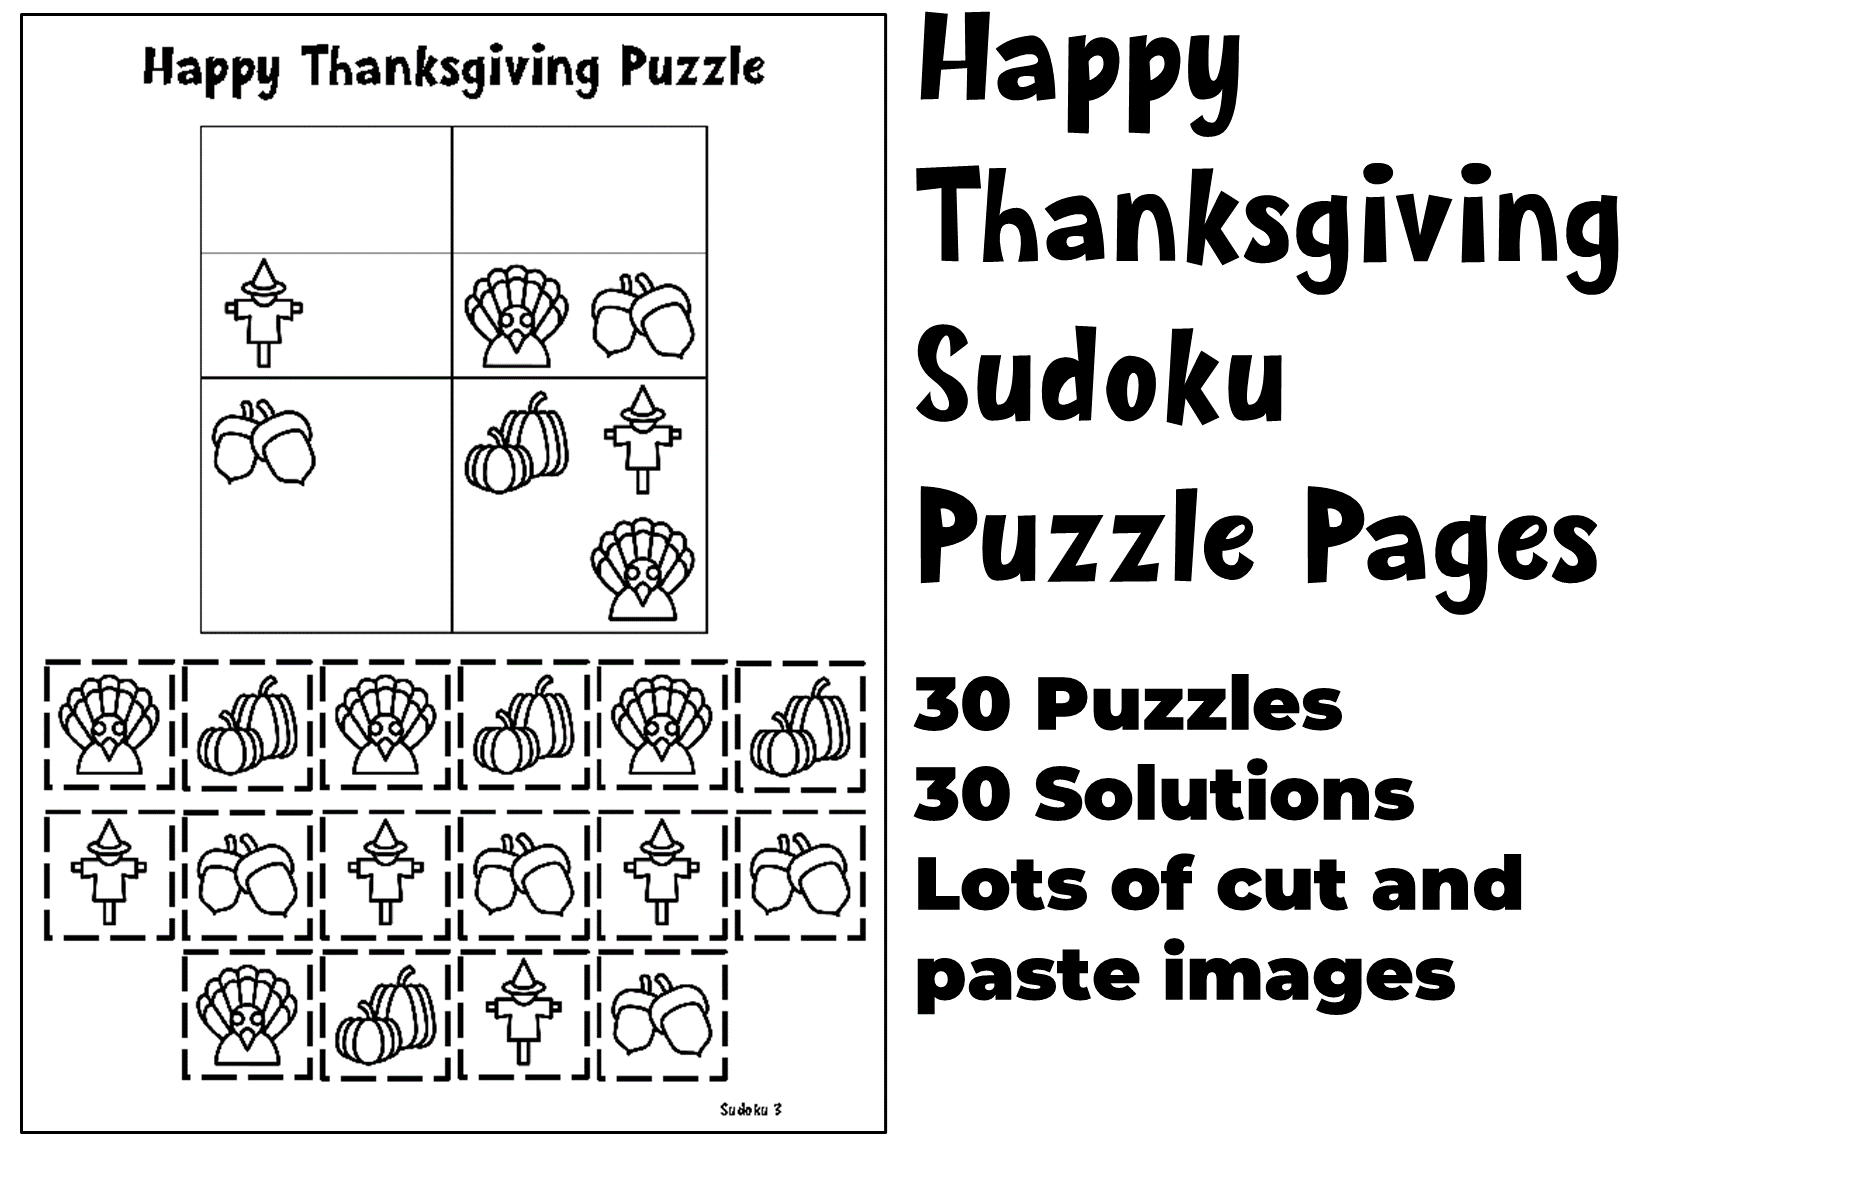 Thanksgiving Sudoku 4x4